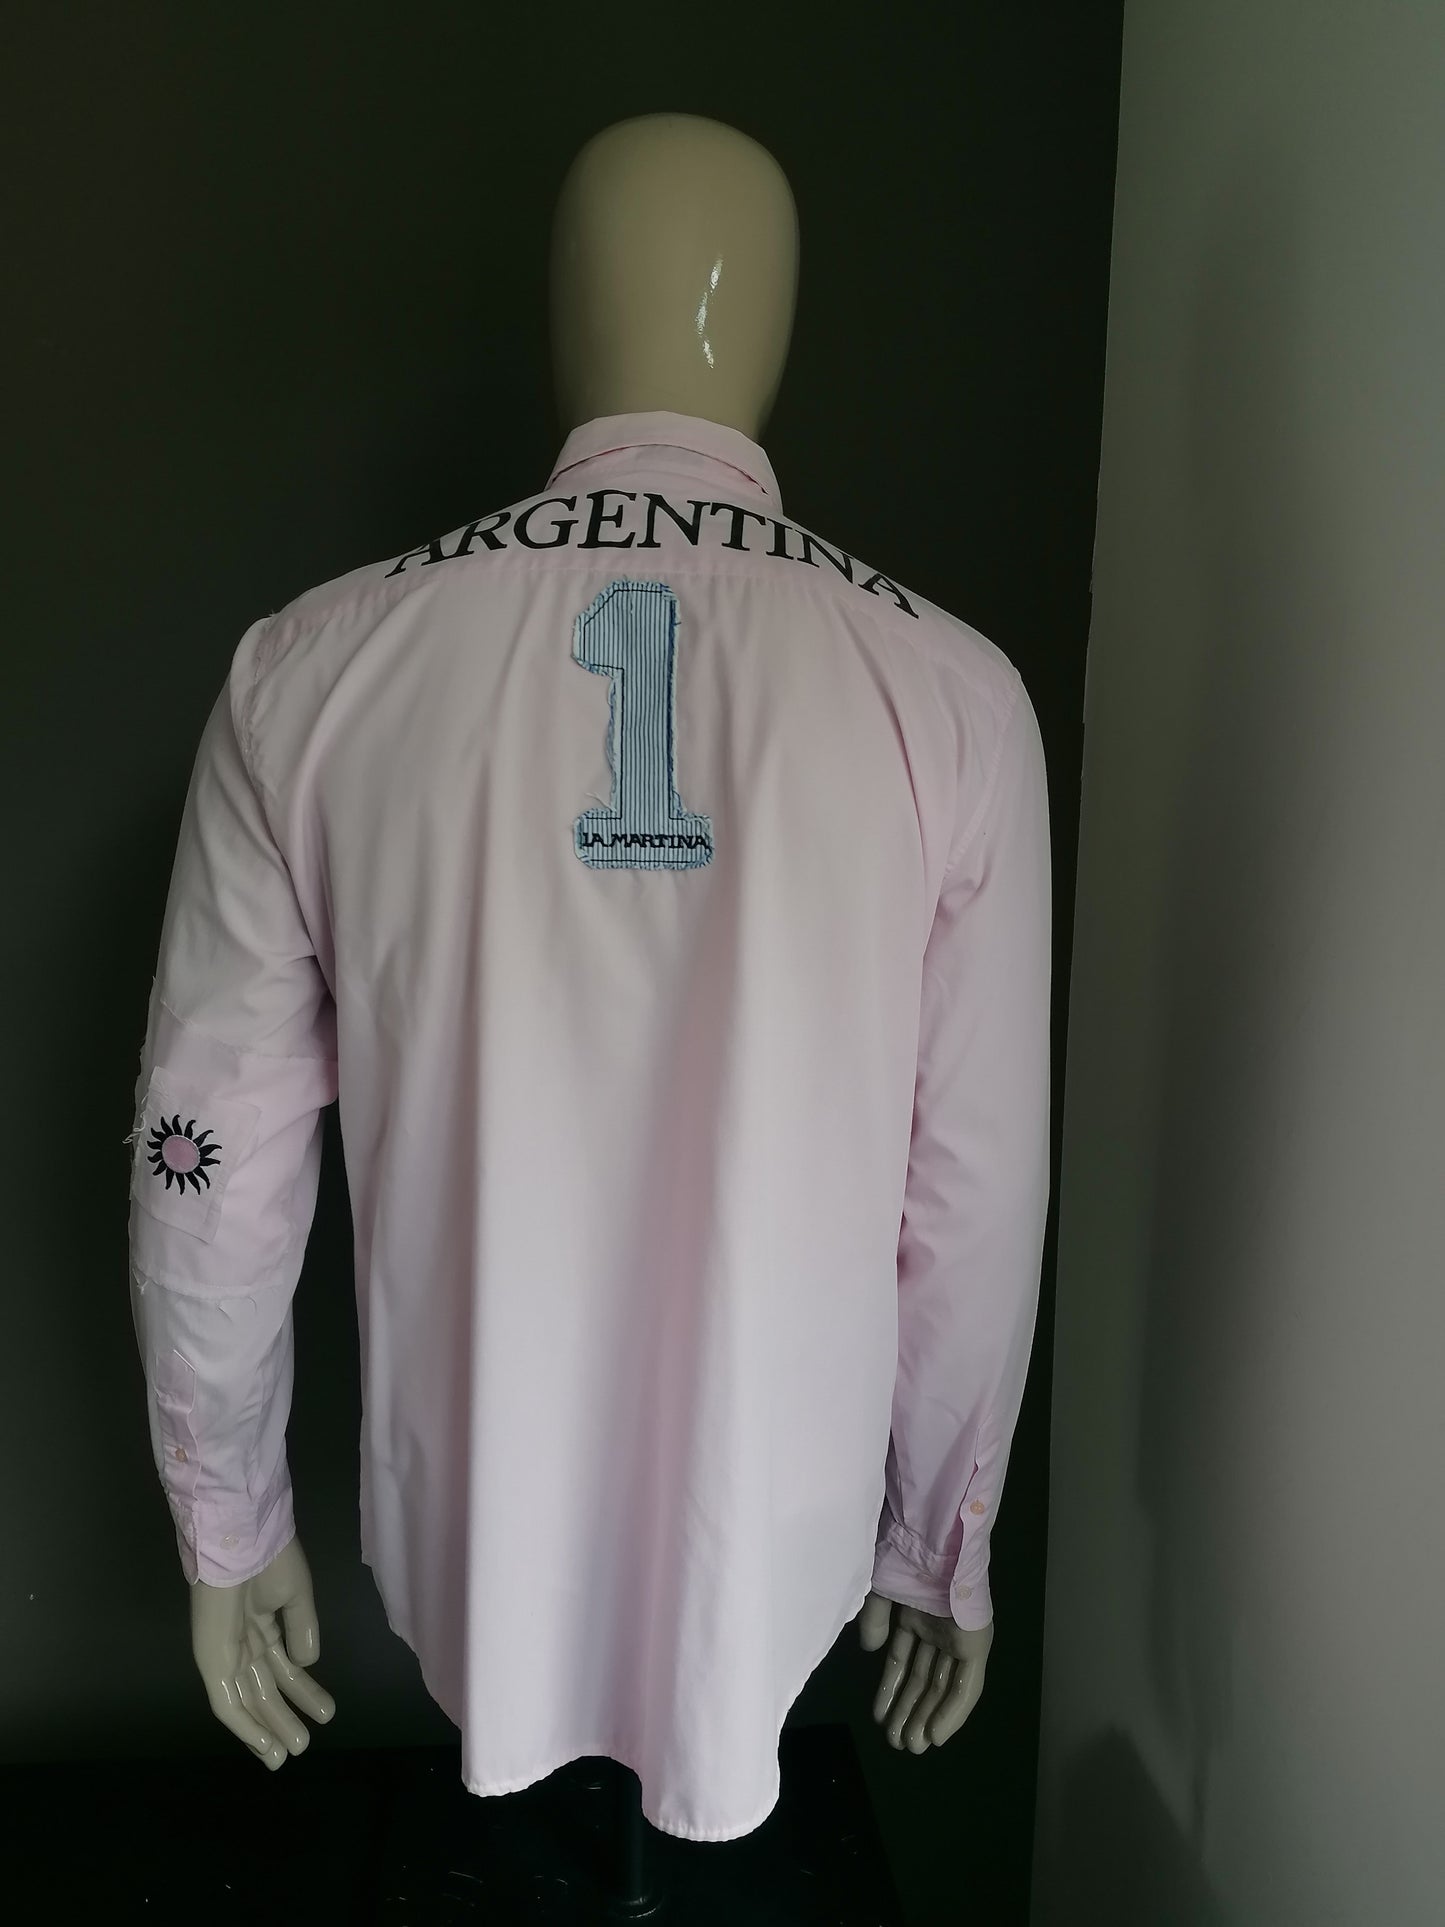 La Martina overhemd. Roze gekleurd met applicaties. Maat XL.